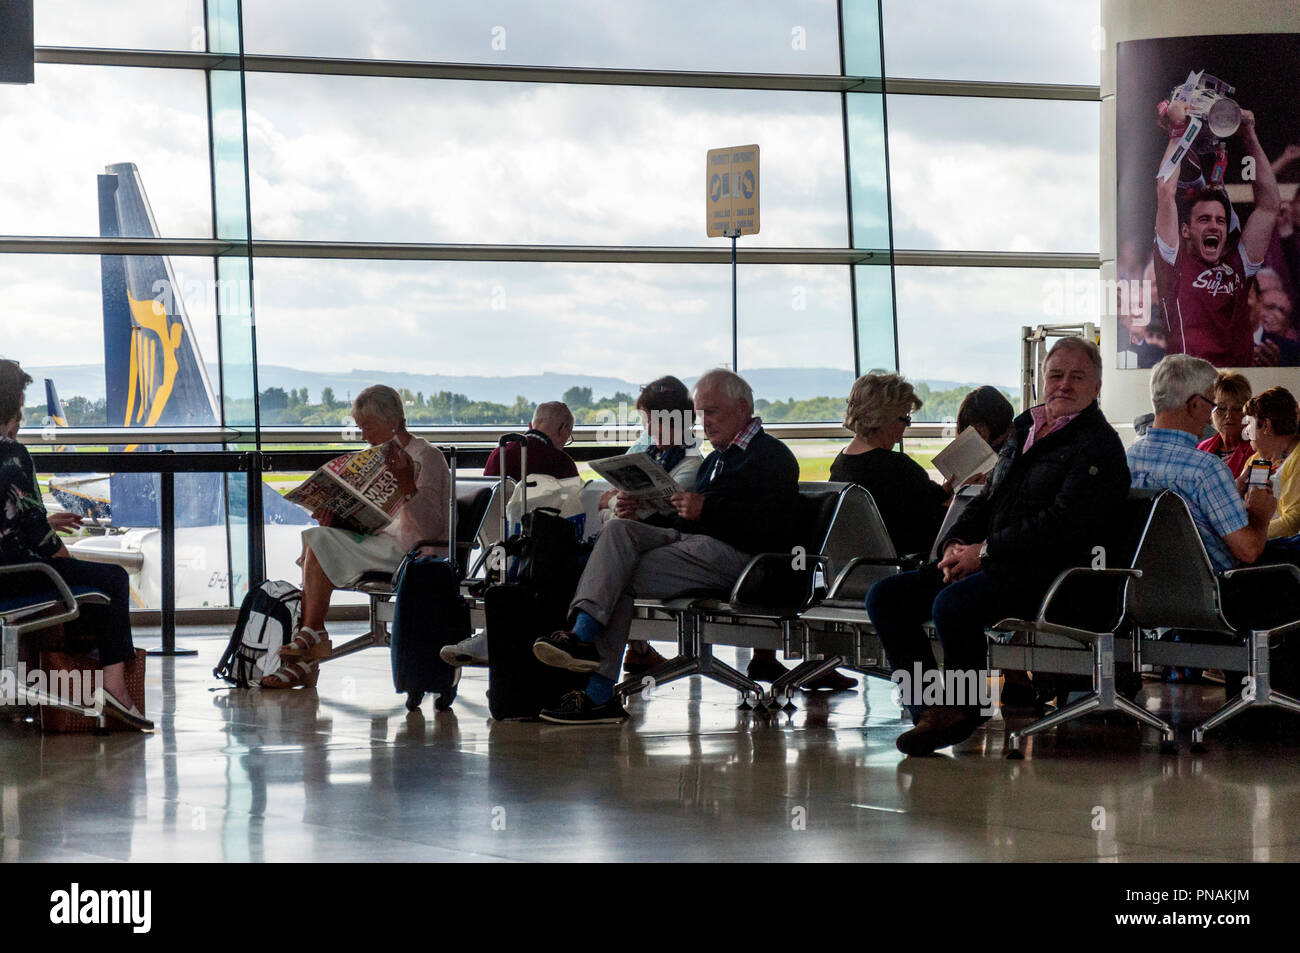 El aeropuerto de Dublín, Irlanda. Los pasajeros esperar a bordo de un vuelo sentarse en las puertas de embarque de la Terminal 1. Foto de stock